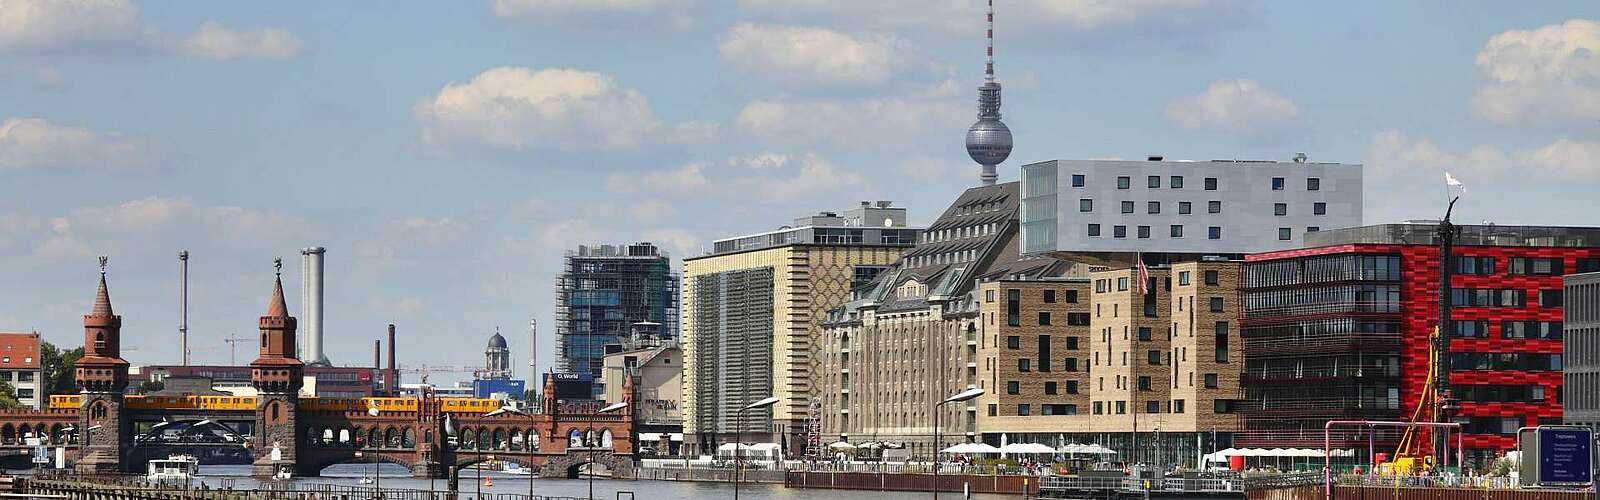 Blick auf den Berliner Osthafen mit Oberbaumbrücke,
        
    

        Foto: bzi Berliner Zentrum Industriekultur/Andreas Muhs